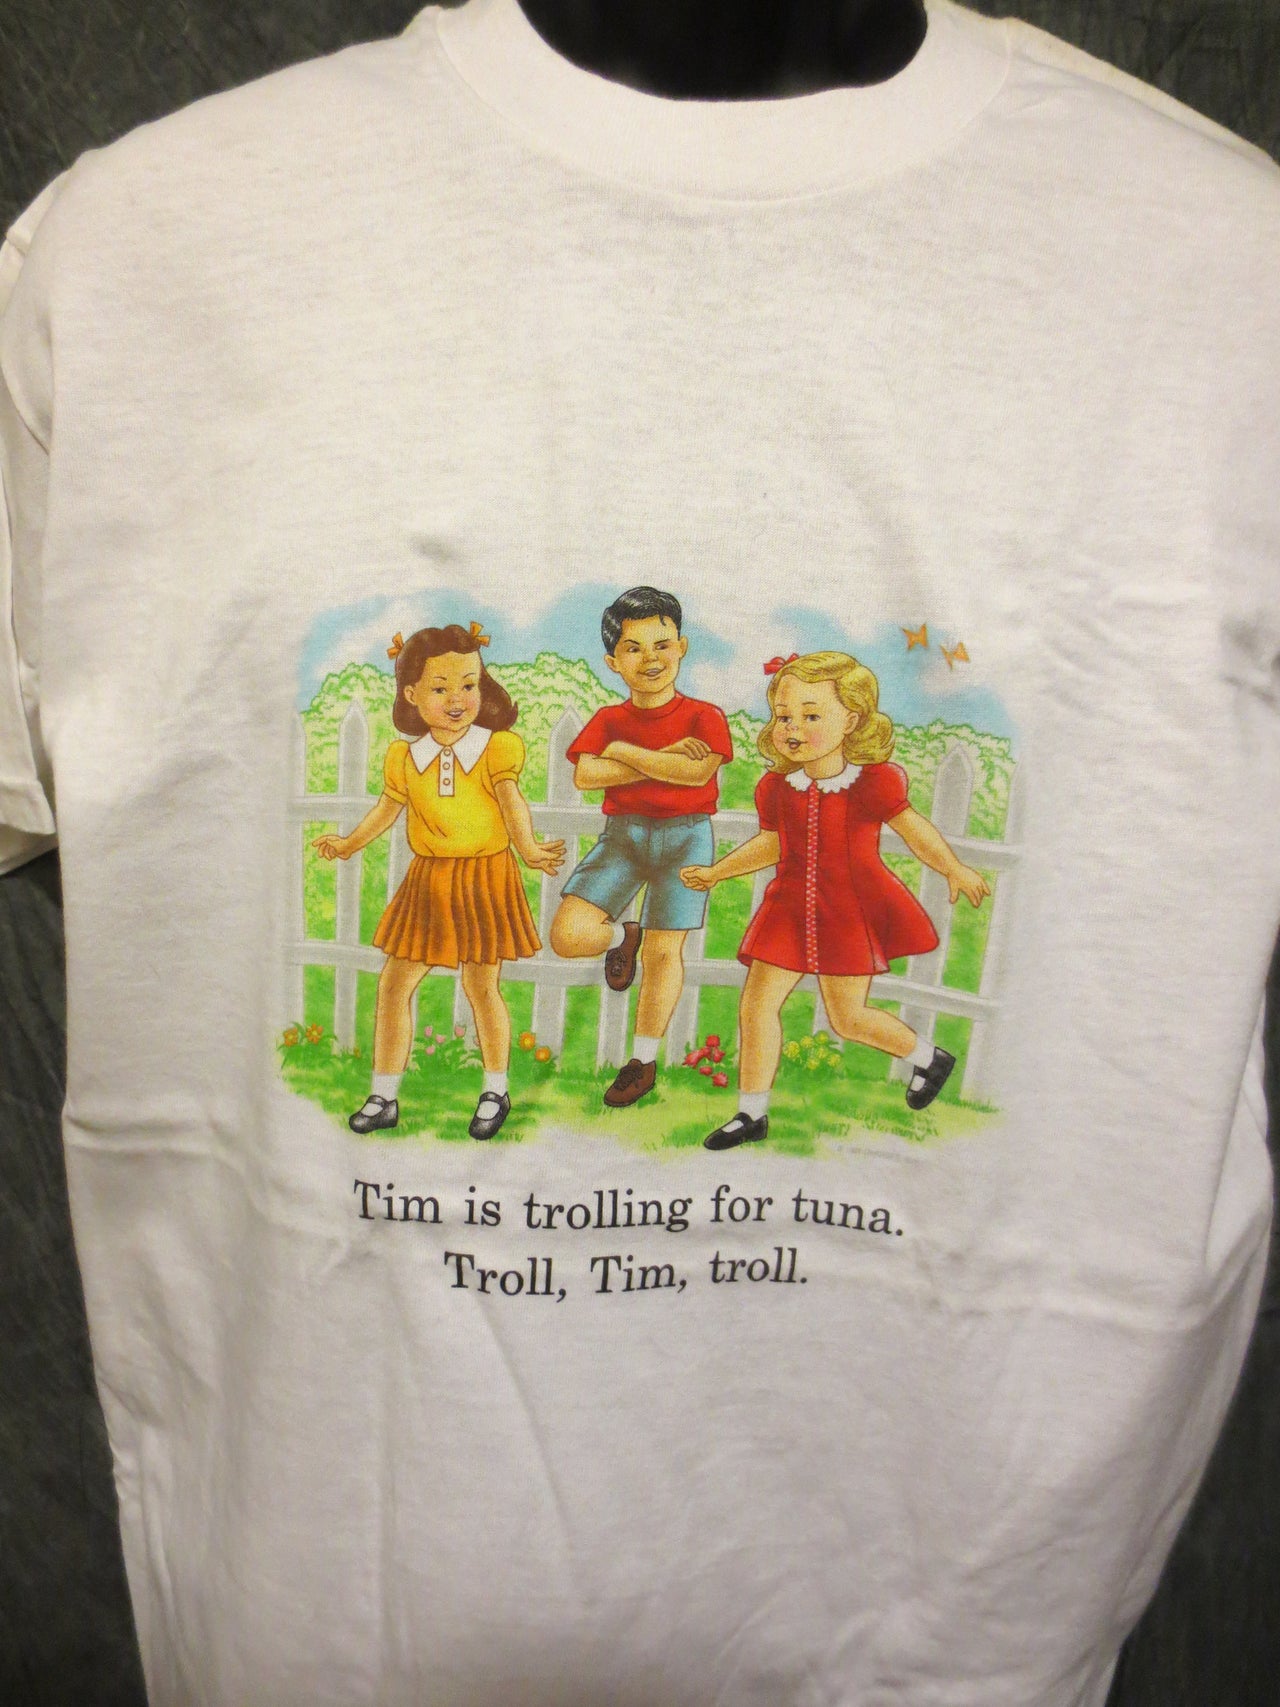 Childhood Tim is Trolling For Tuna. Troll, Tim, Troll. White Tshirt - TshirtNow.net - 4